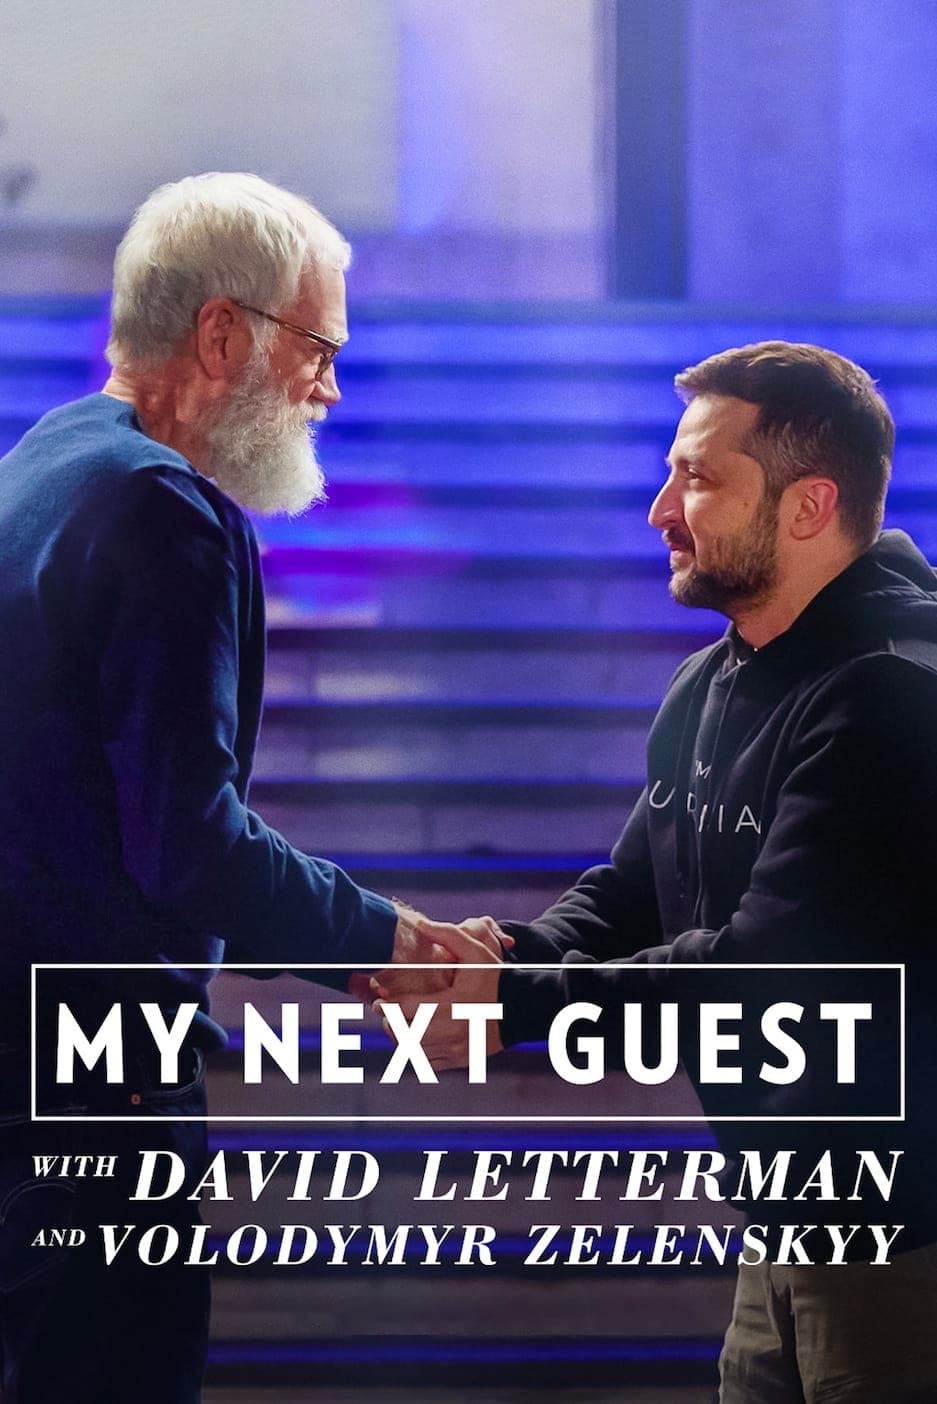 David Letterman: Vị khách tiếp theo là Volodymyr Zelenskyy (My Next Guest with David Letterman and Volodymyr Zelenskyy) [2022]